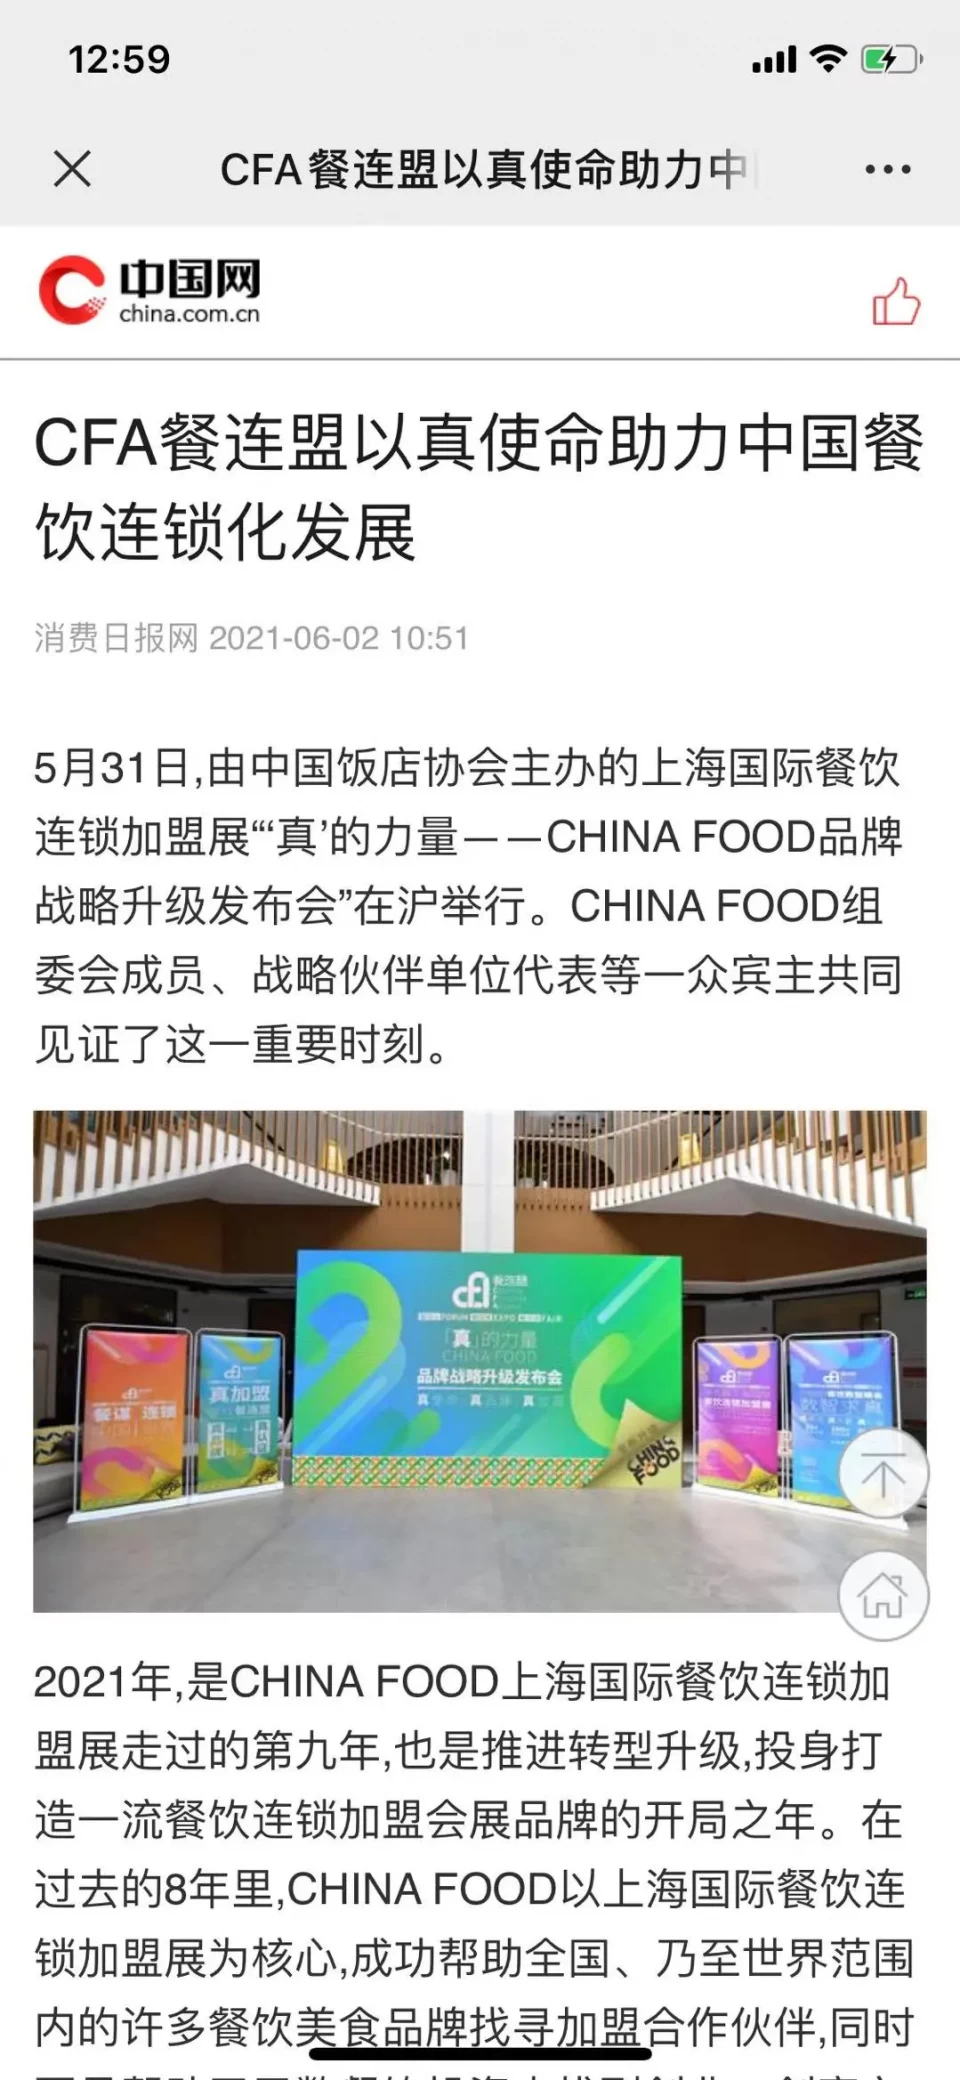 品牌升級發布會，CFA餐連盟以真使命助力中國餐飲連鎖發展